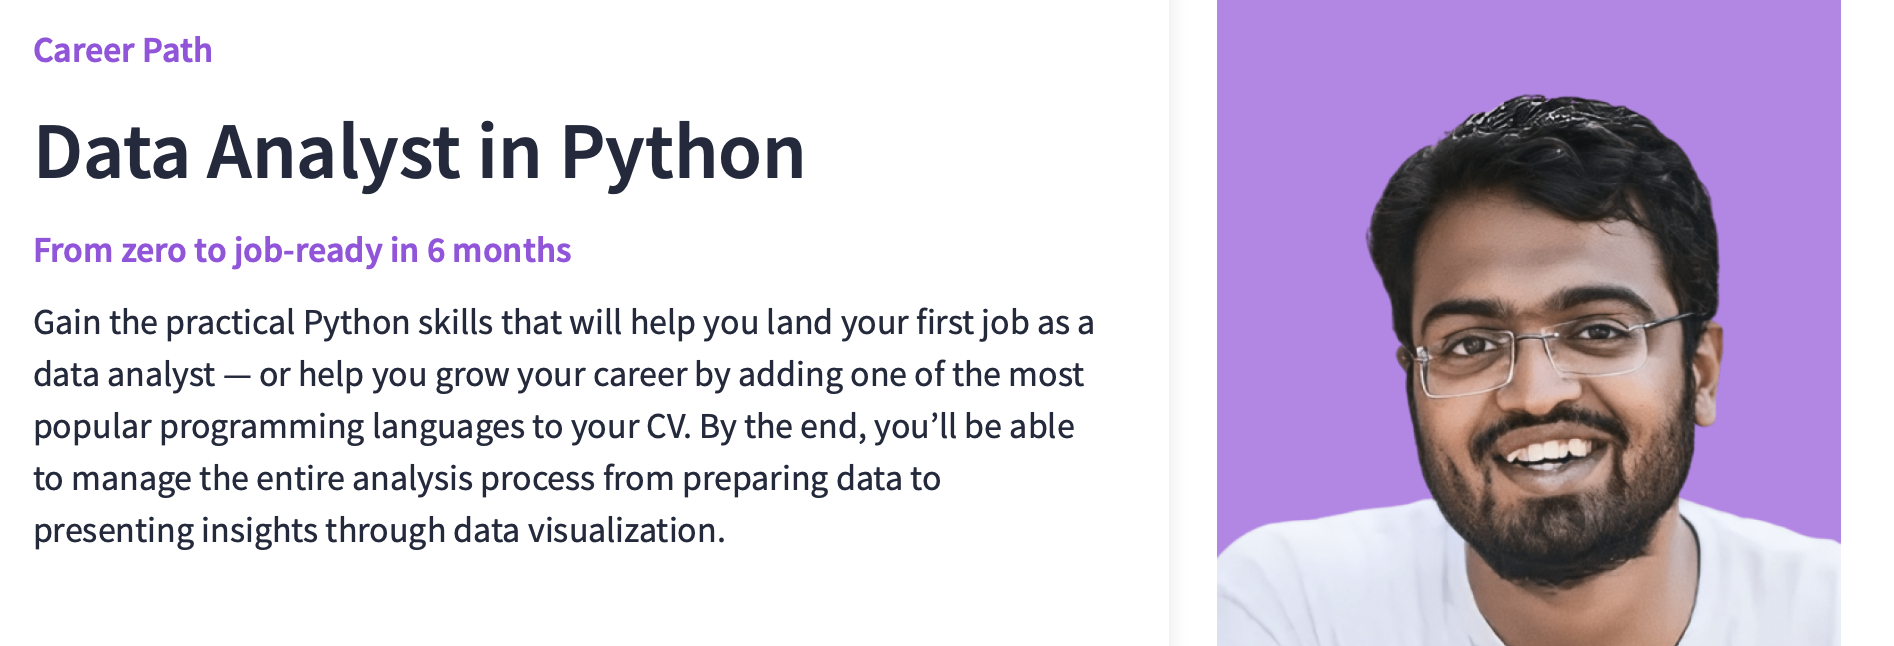 Data Analyst in Python